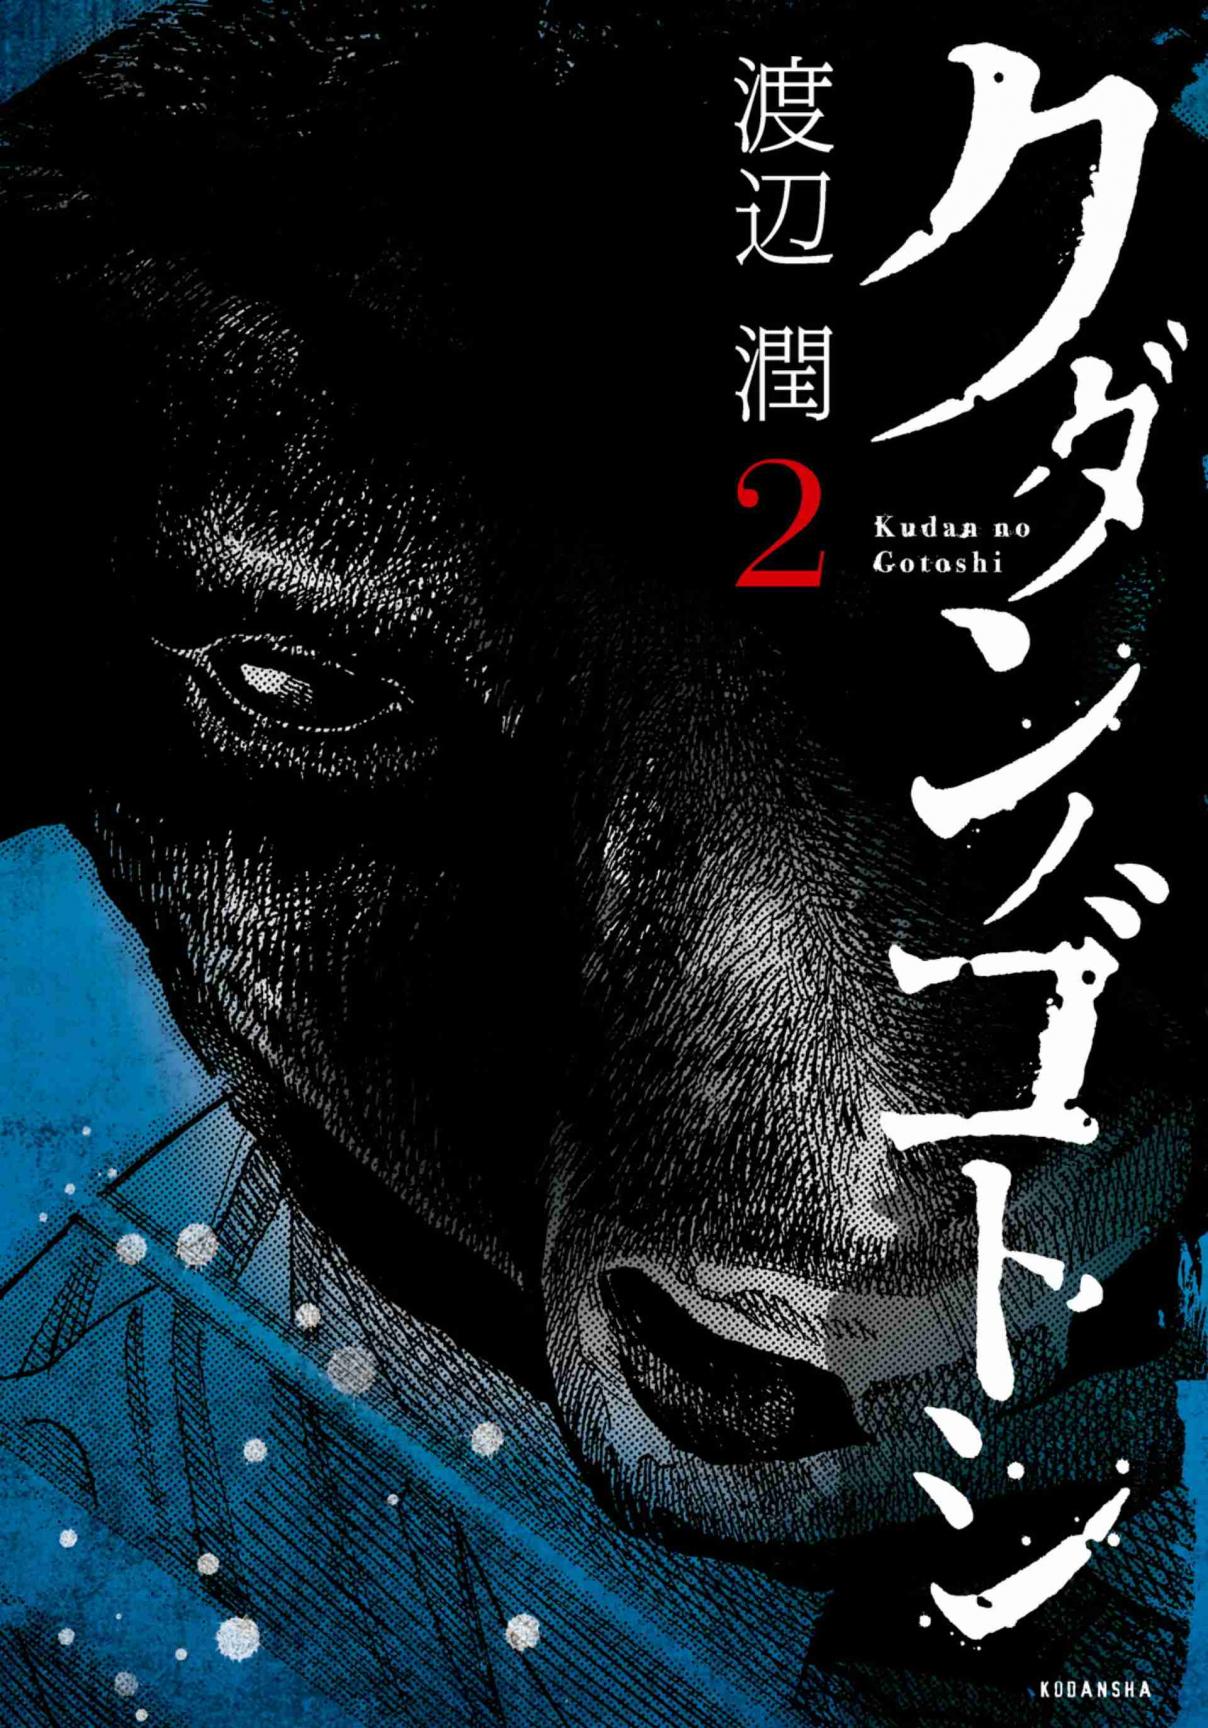 Kudan no Gotoshi Vol. 2 Ch. 8 Chizuru Sakurai < Part 2 >